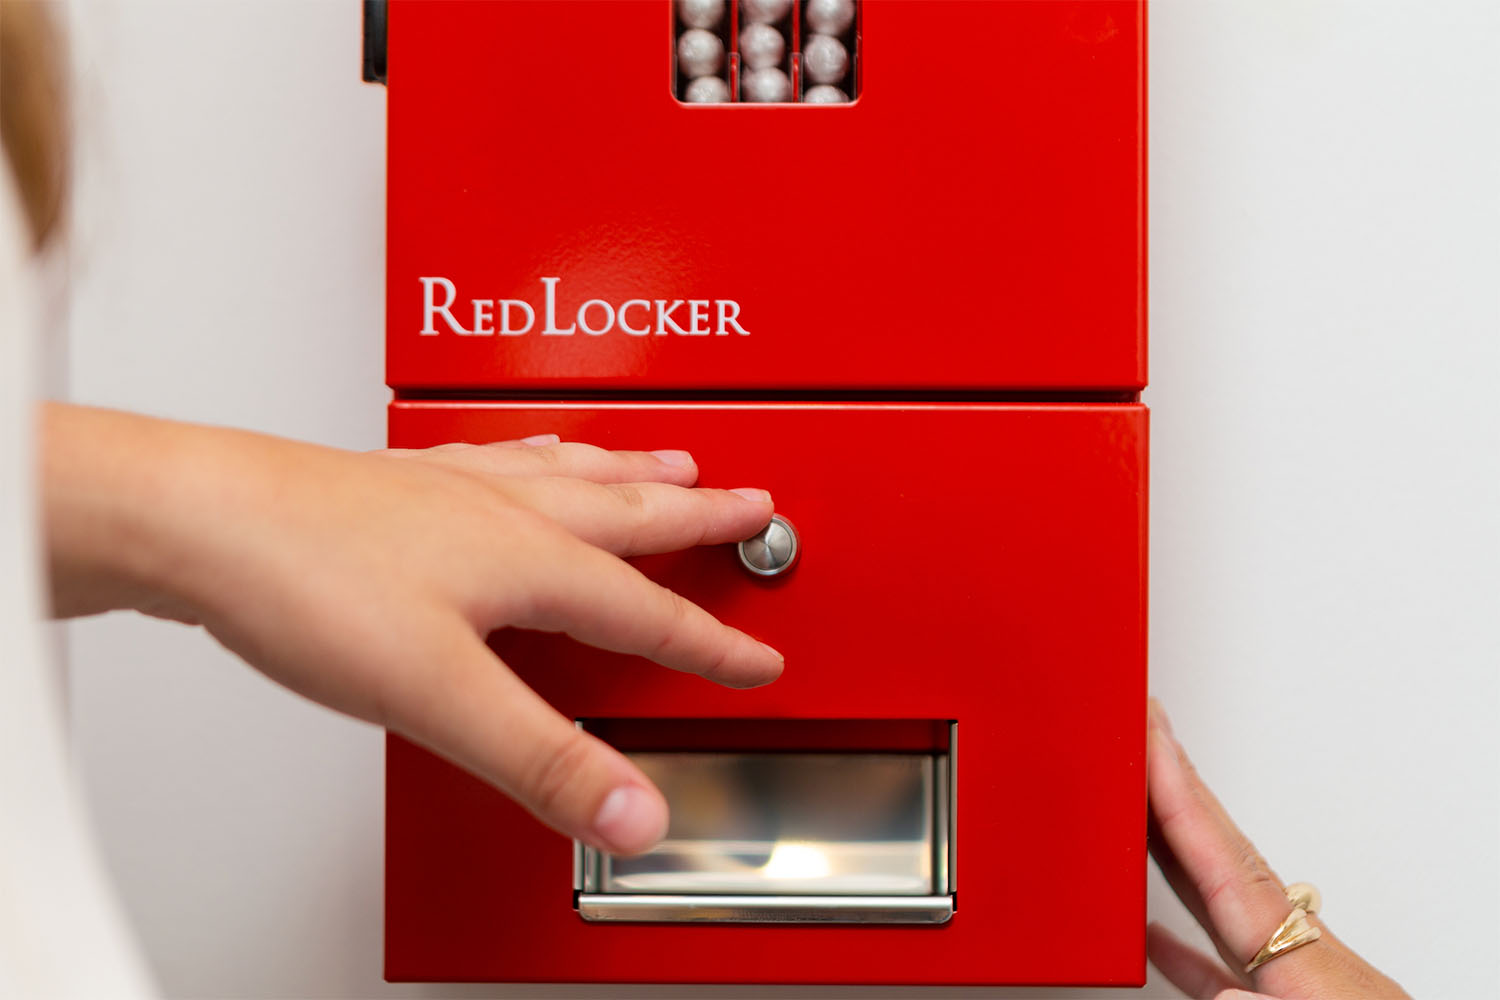 En hand sträcker sig mot ett rött plåtskåp med texten RedLocker.